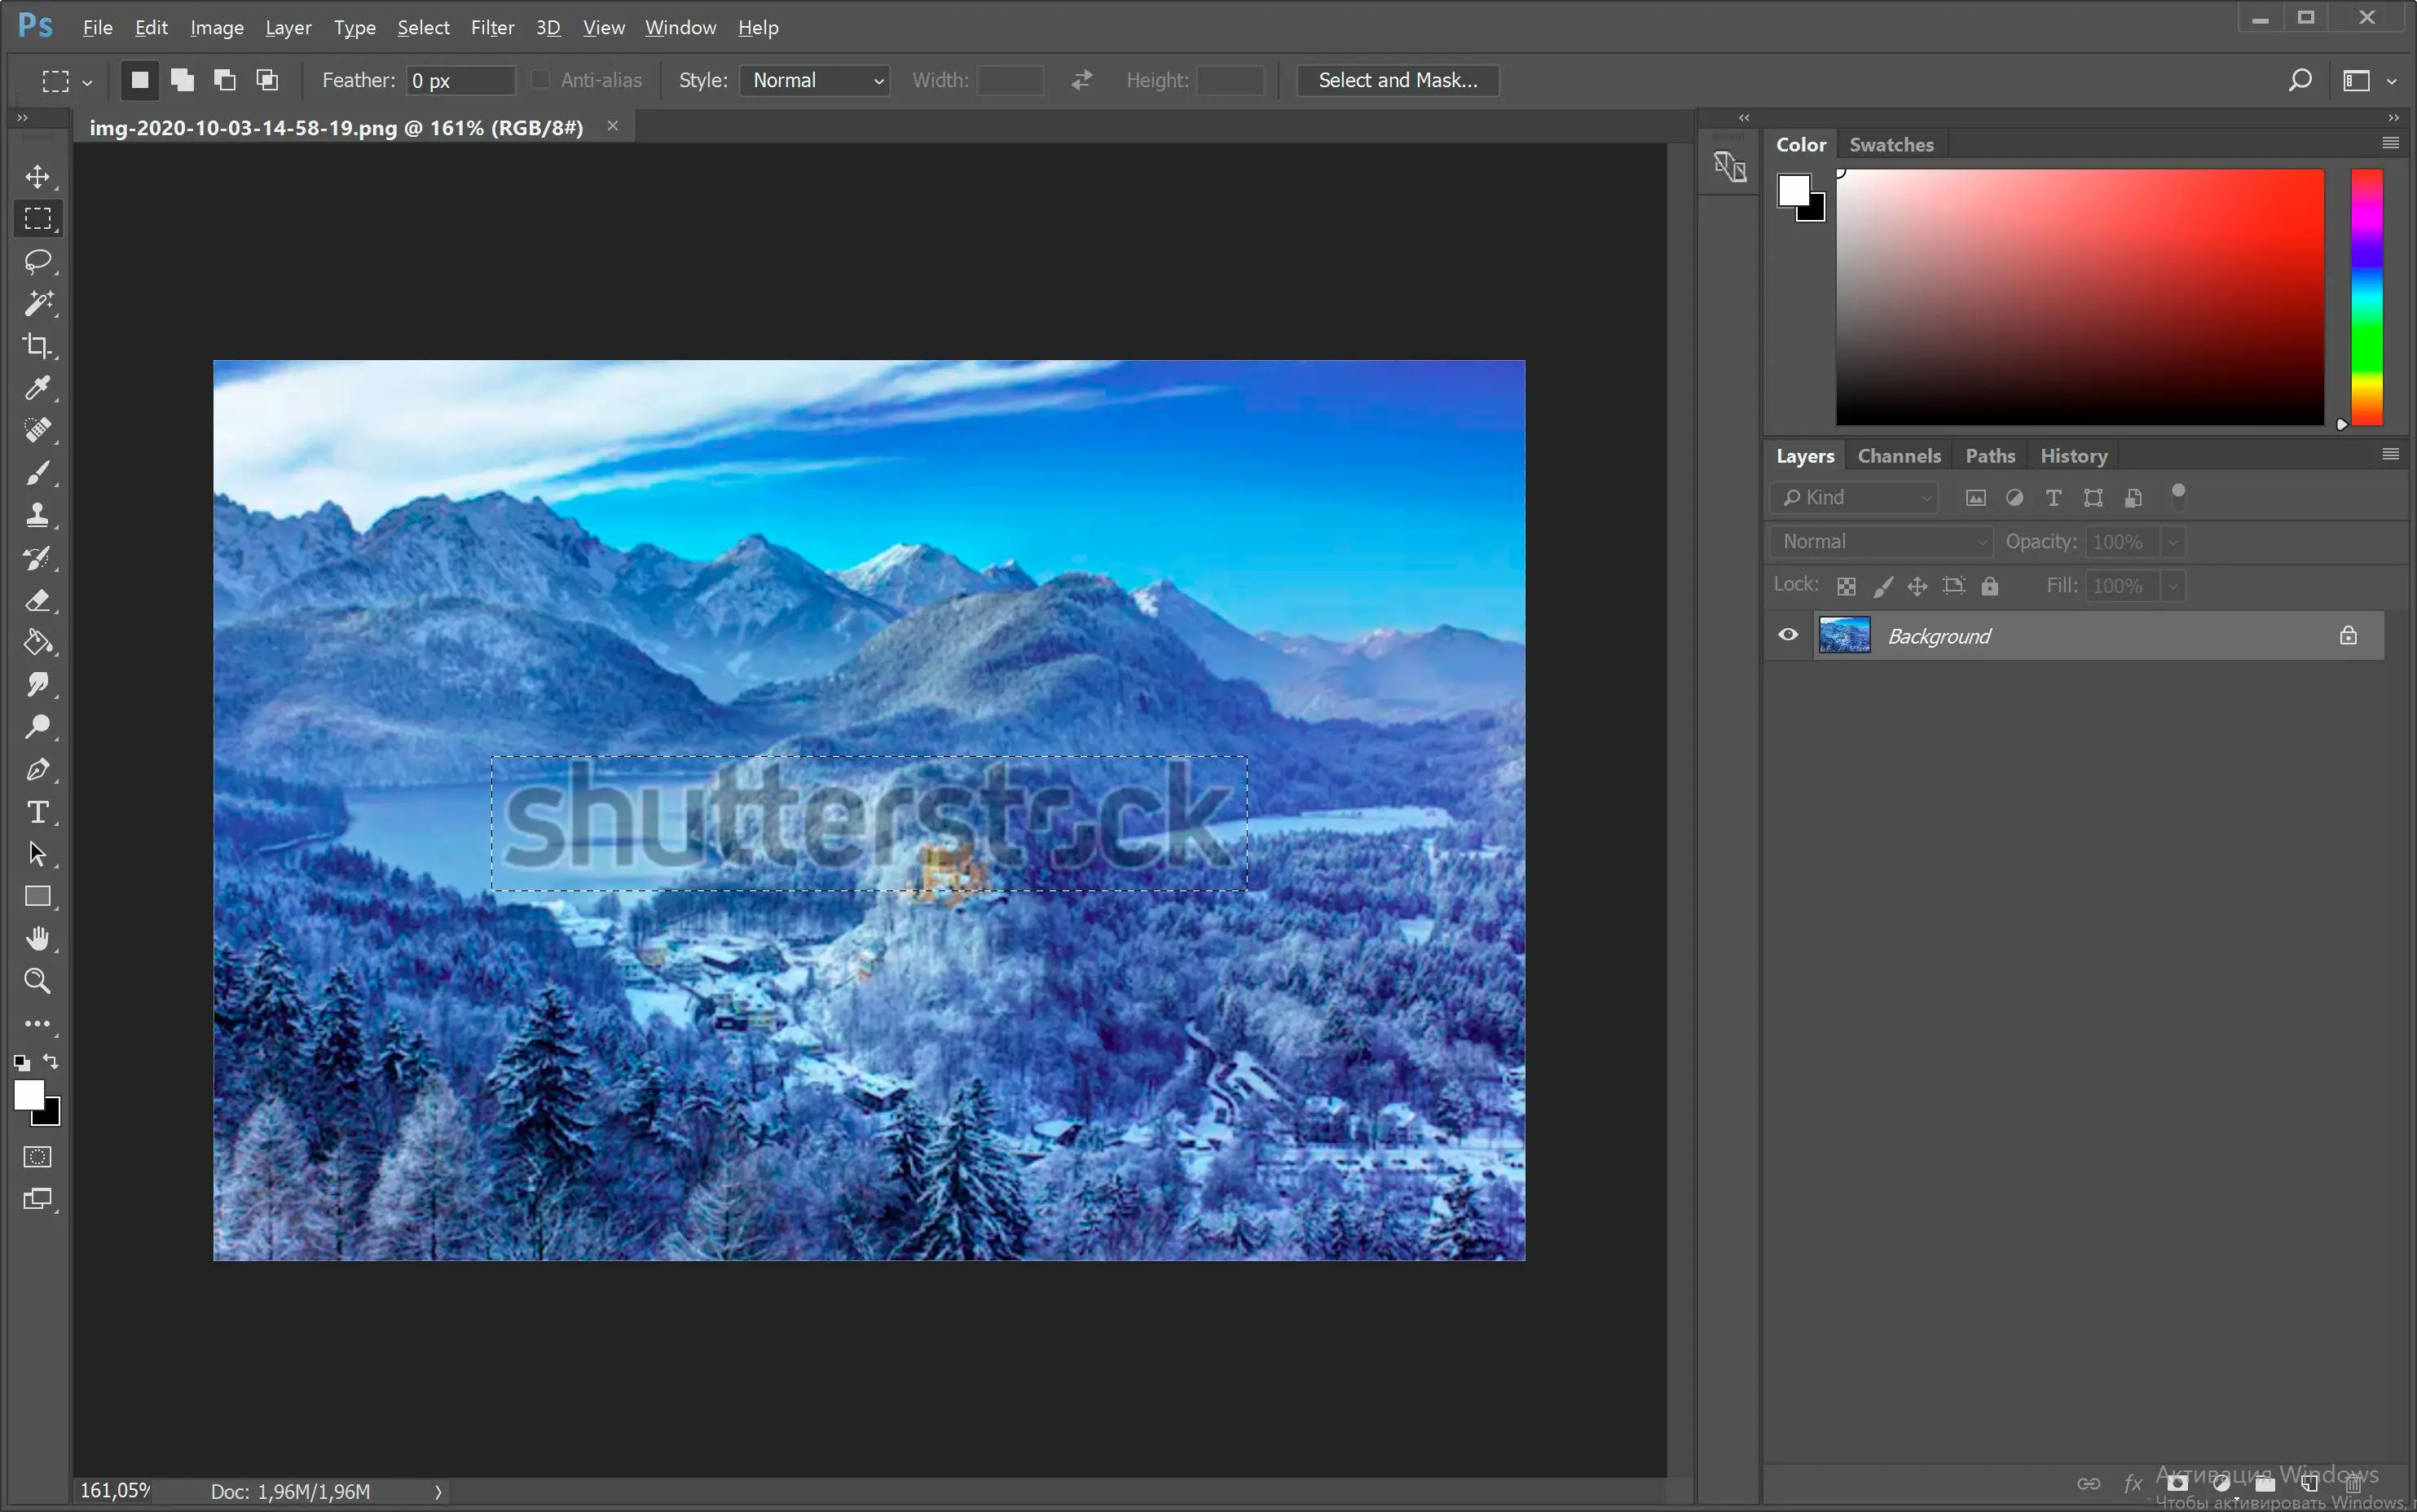 Öppna bild med Shutterstock-vattenstämpel i Photoshop..